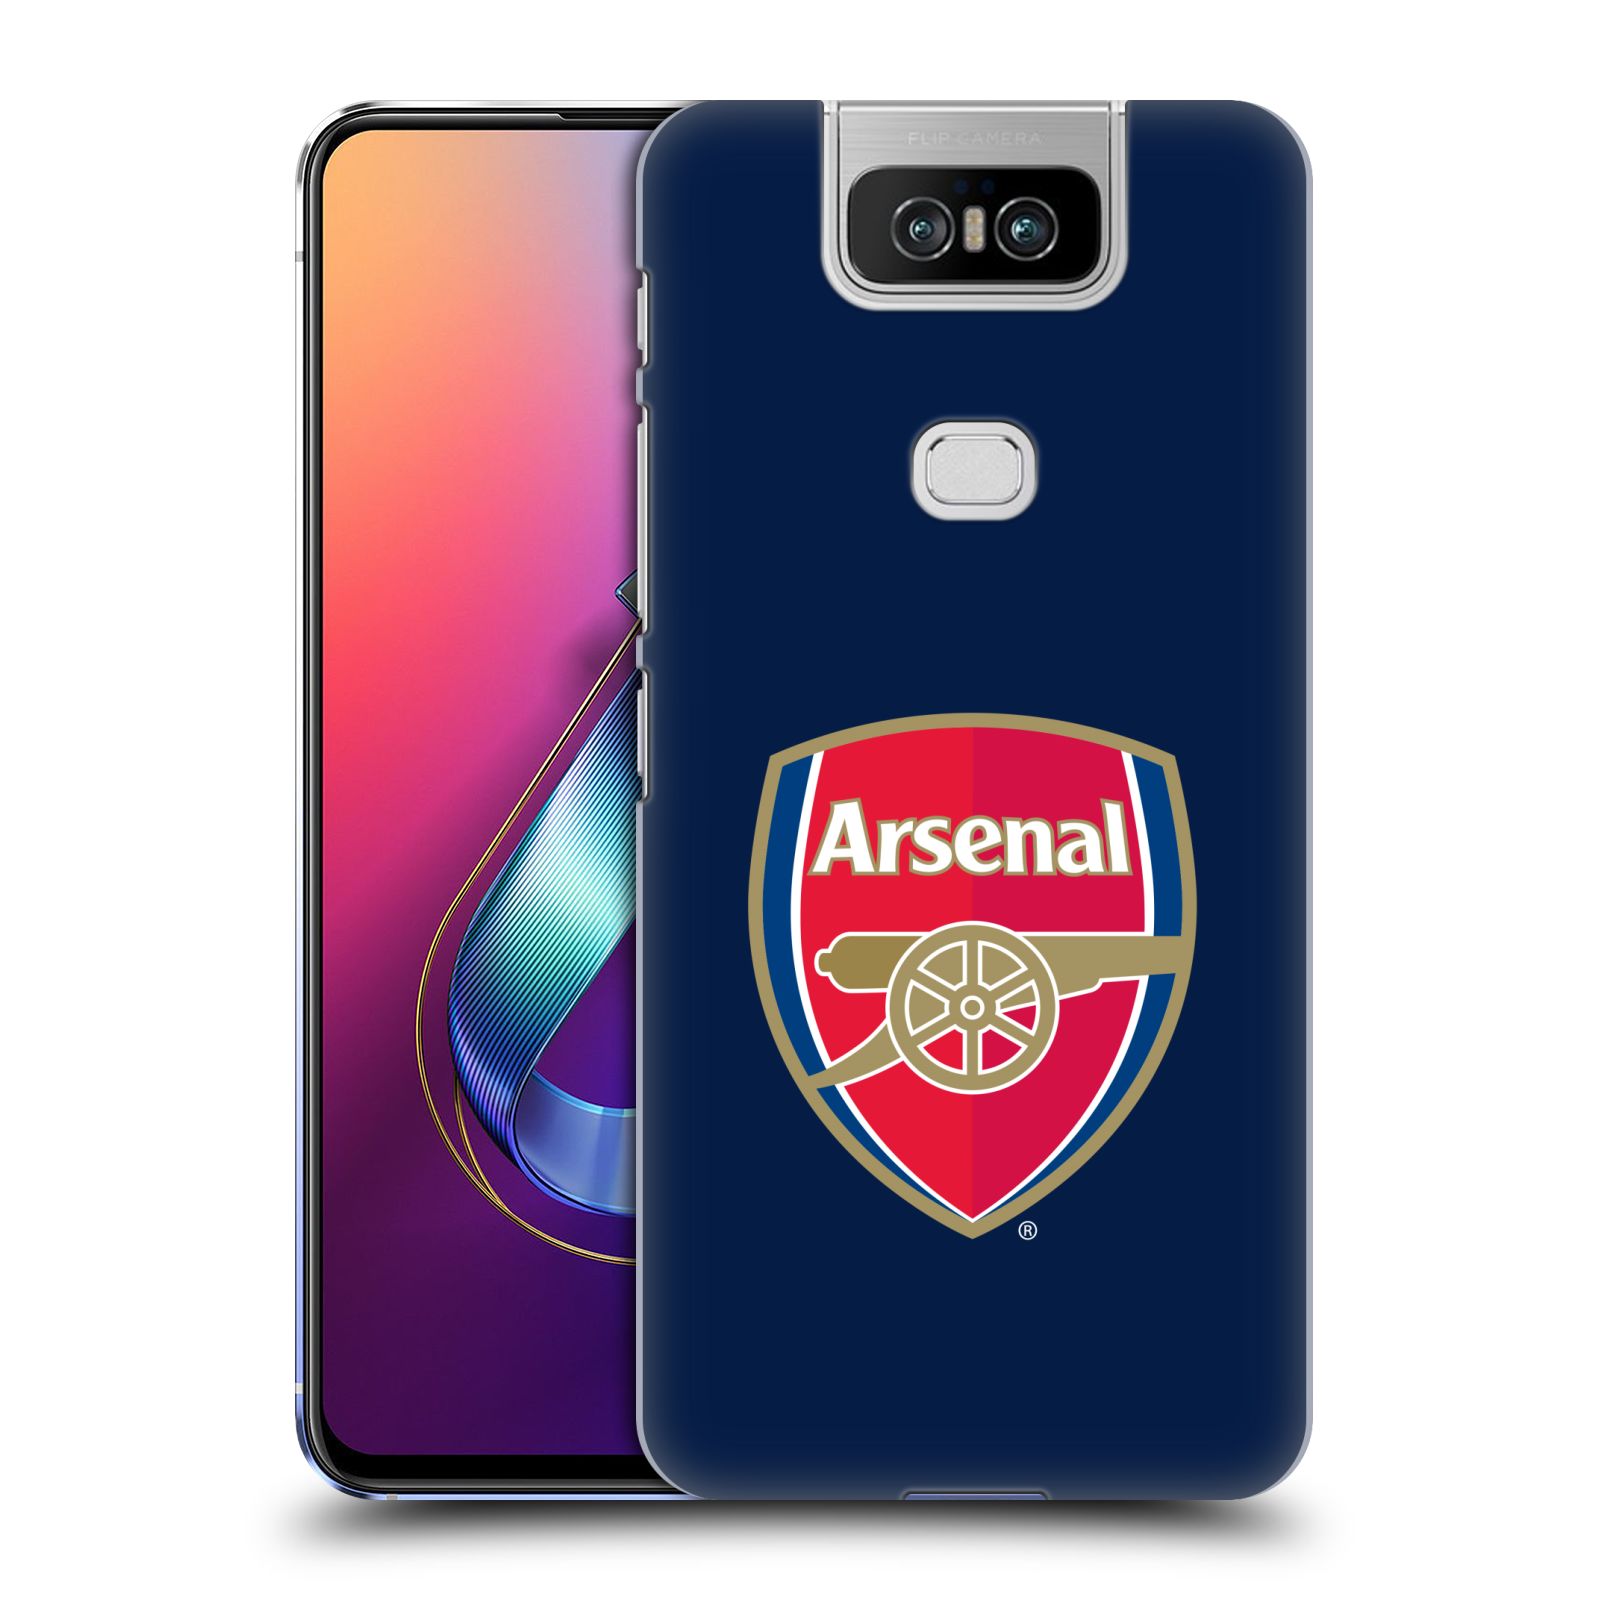 Pouzdro na mobil Asus Zenfone 6 ZS630KL - HEAD CASE - Fotbalový klub Arsenal znak barevný modré pozadí